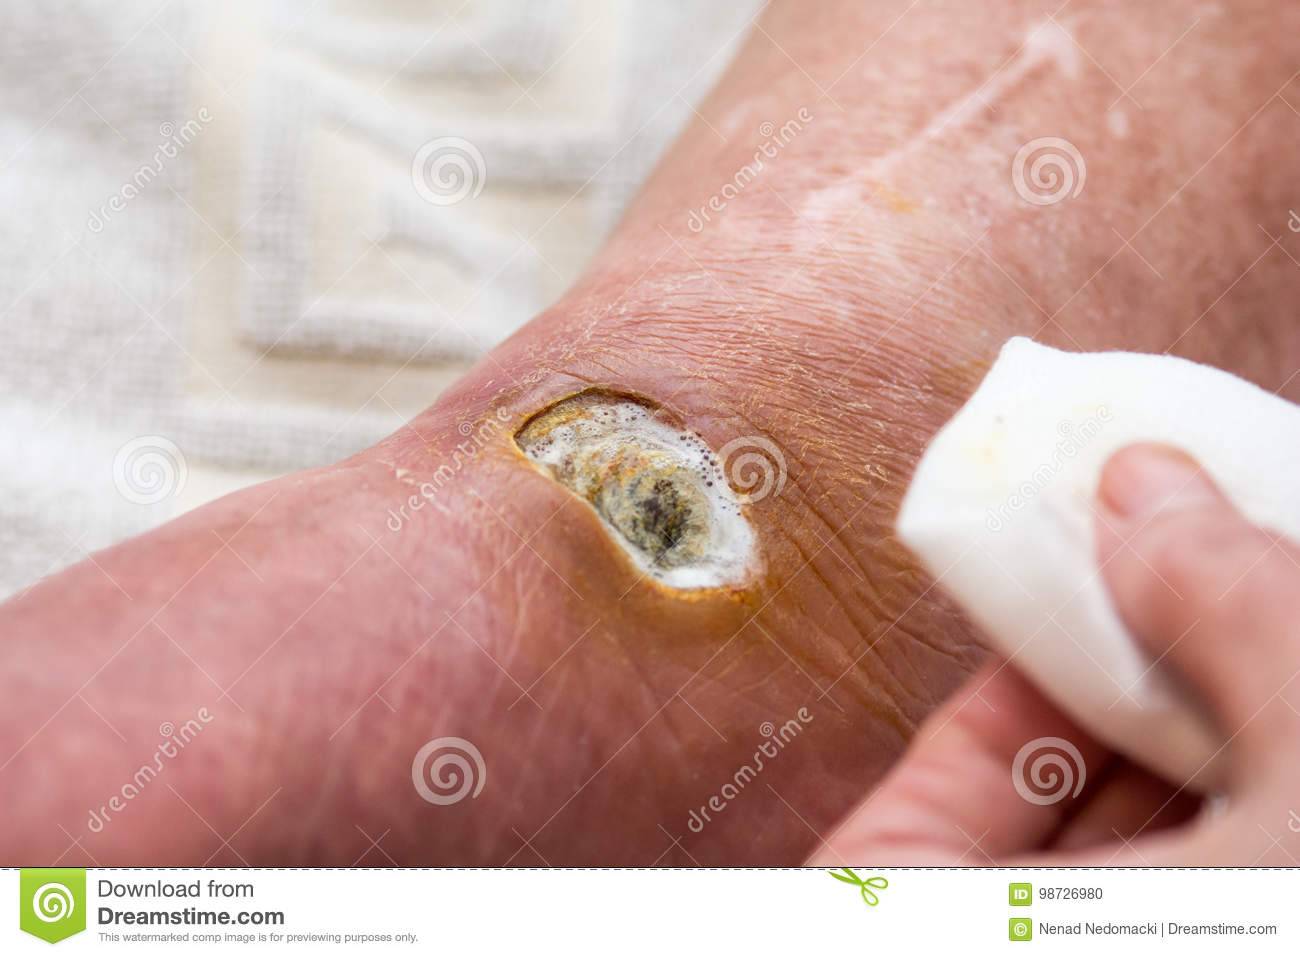 Гангрена ноги фото начальная стадия при сахарном диабете - все про гипертонию